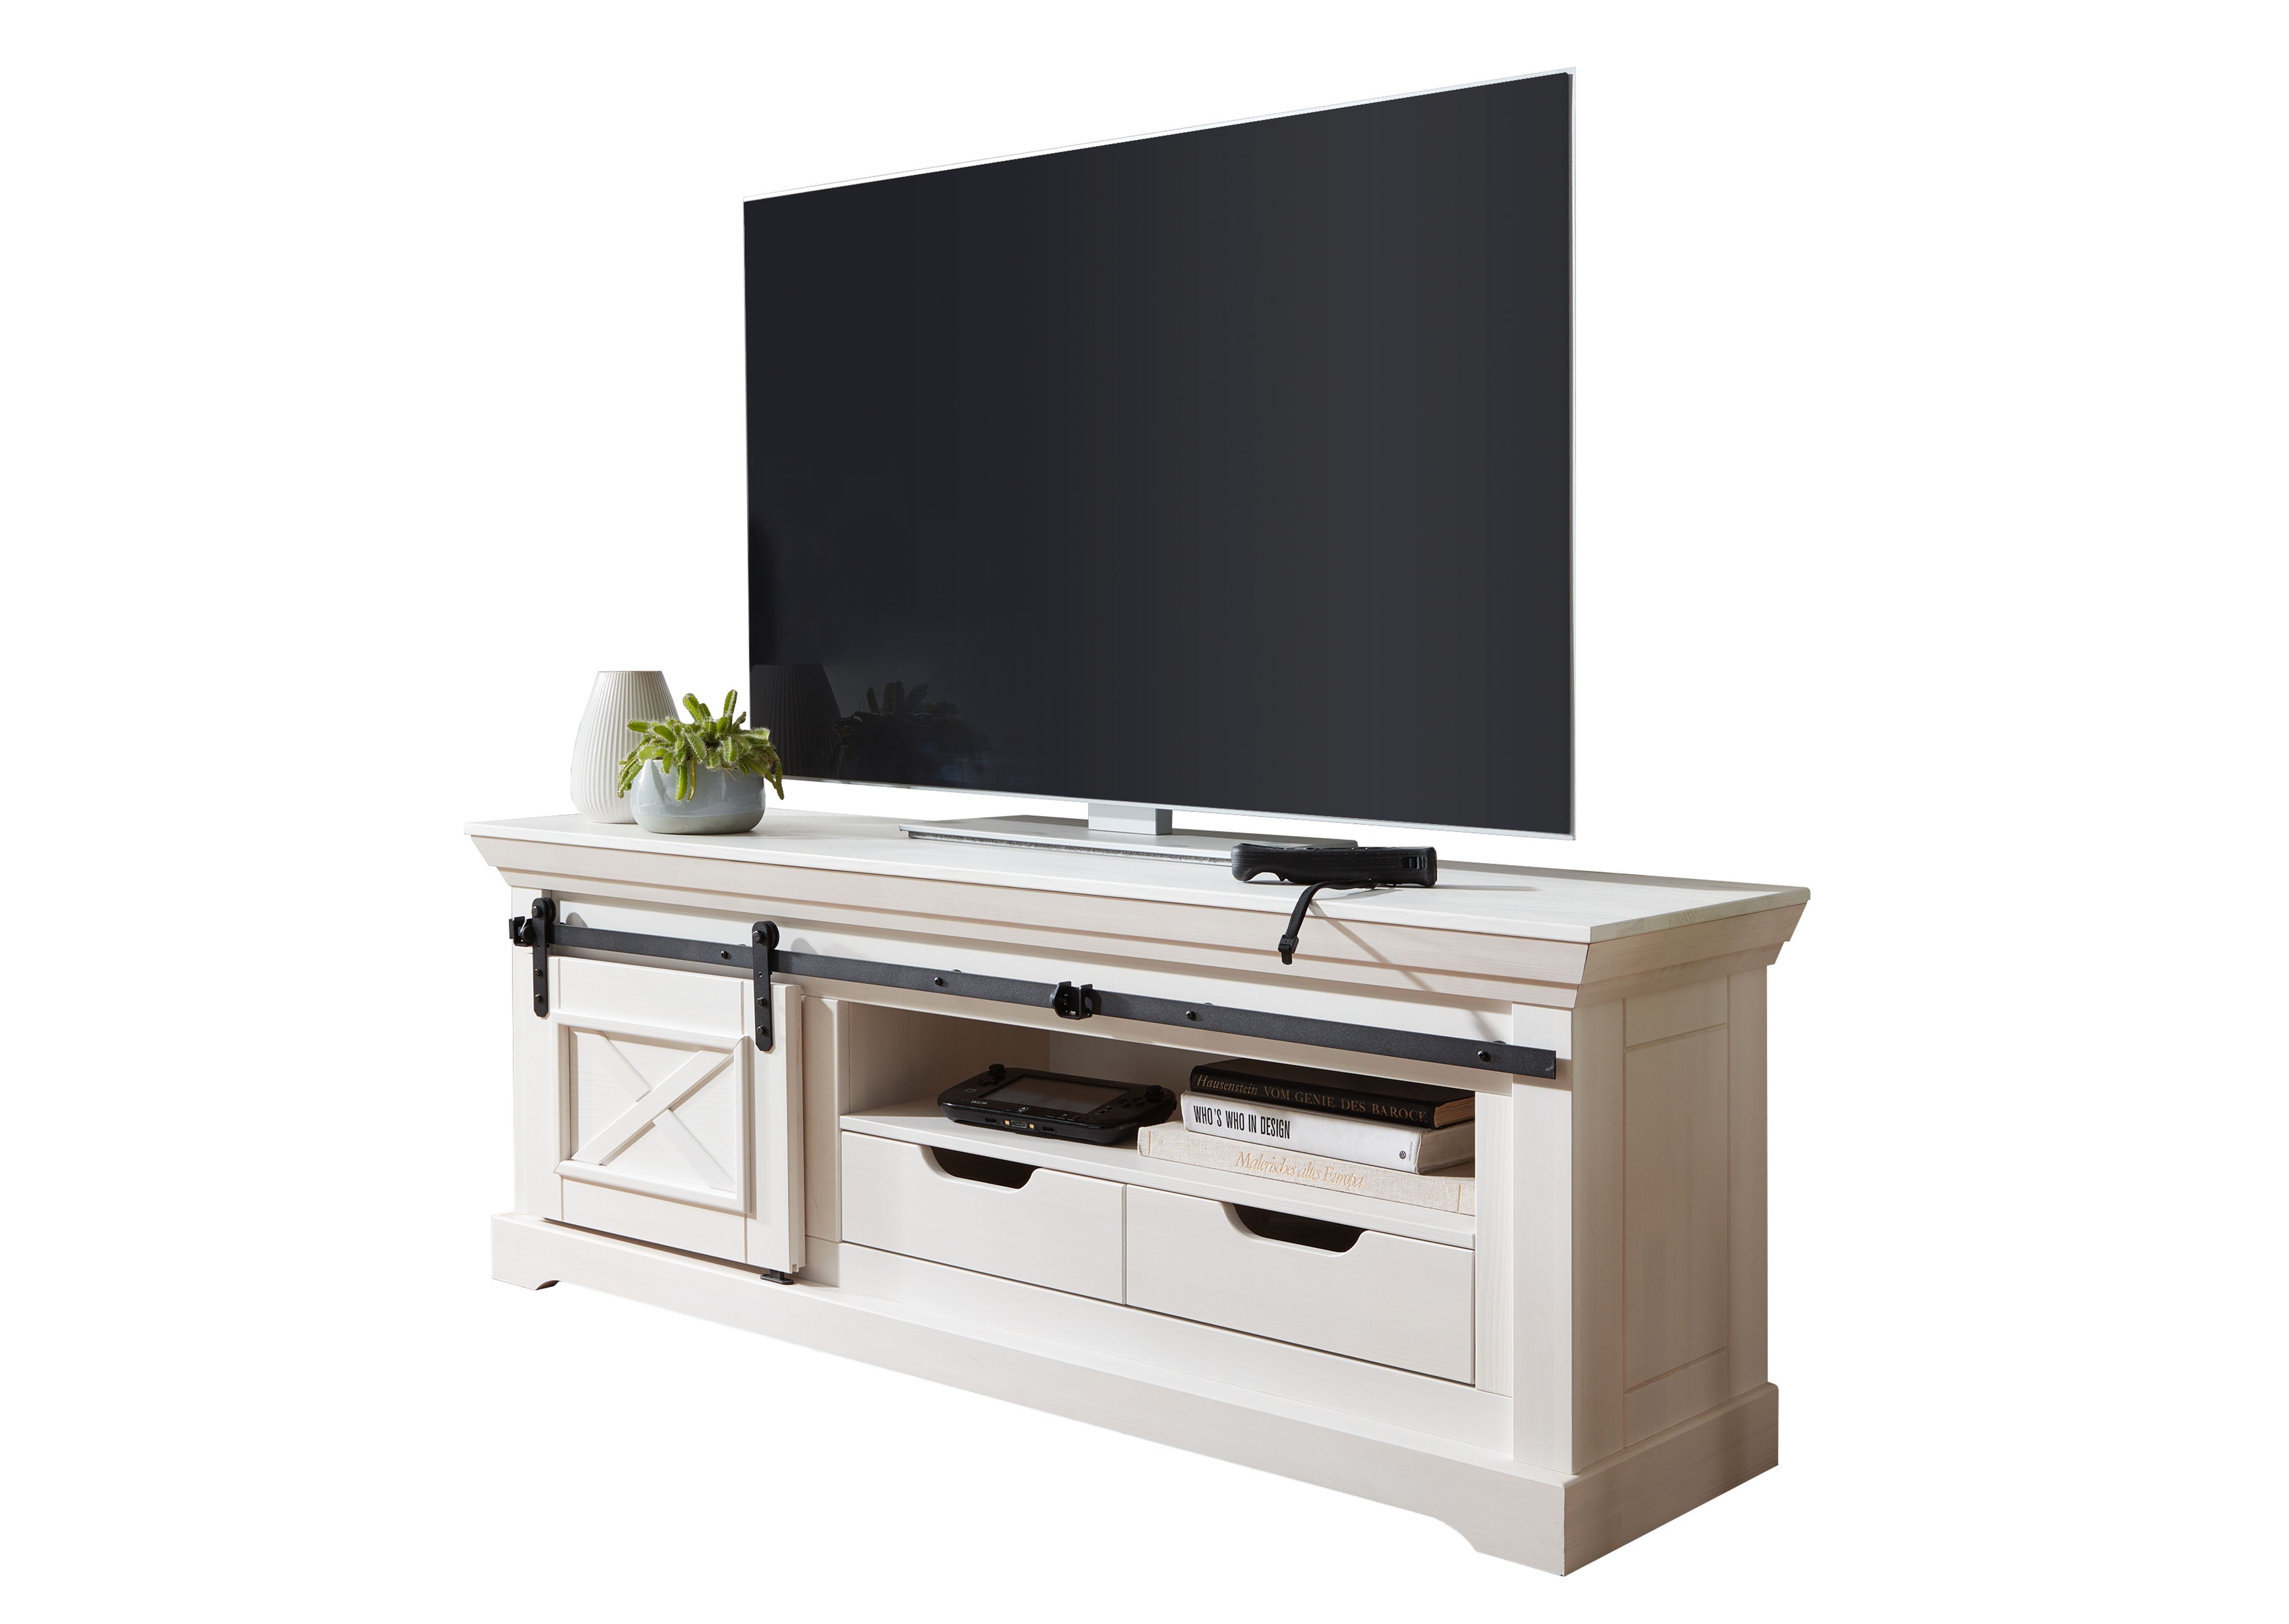 Woodroom TV-Schrank Maribo Kiefer massiv weiß, BxHxT 153x57x40 cm